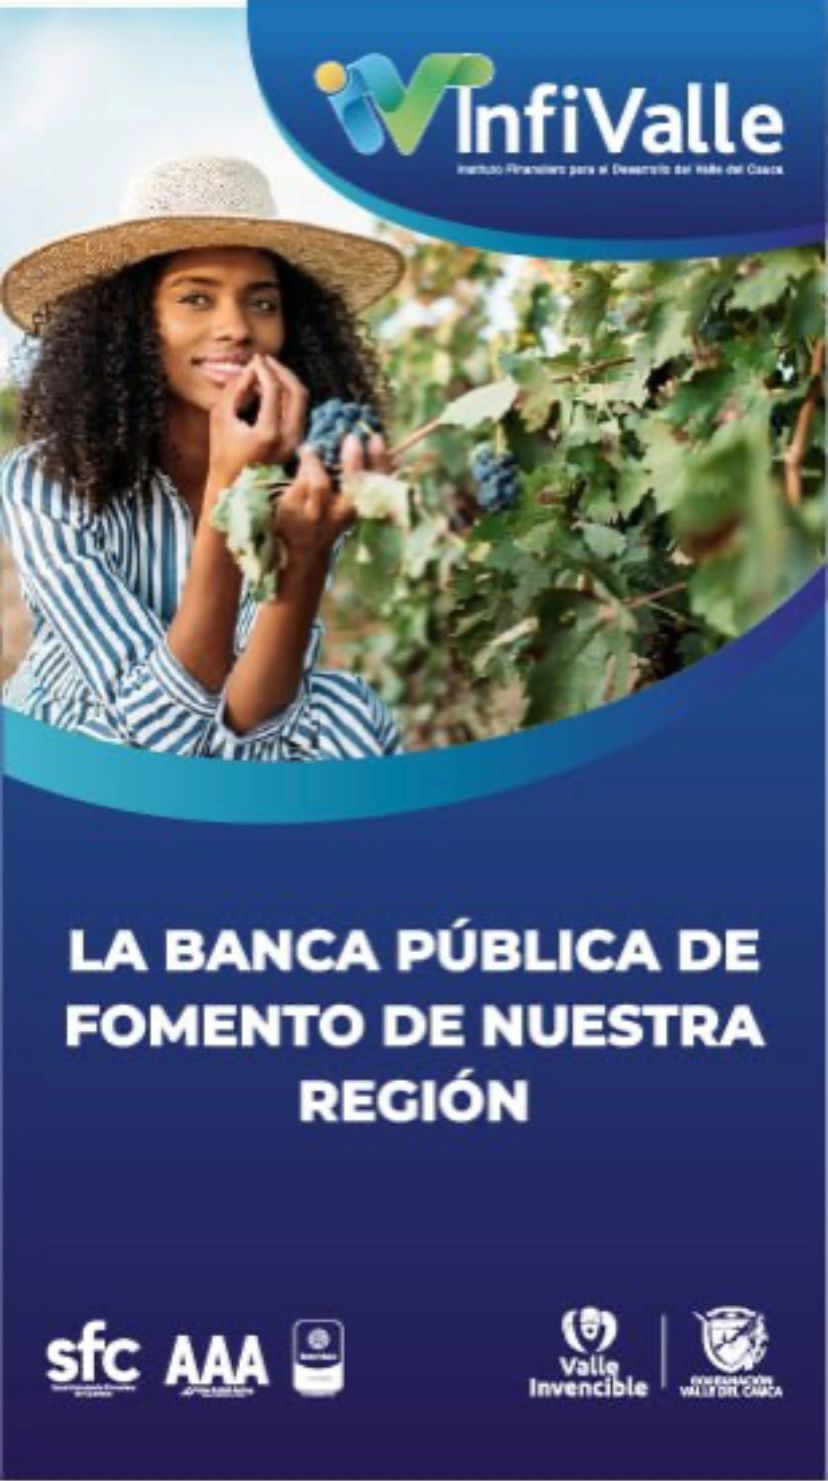 Anuncio: La banca pública de fomento de nuestra región - Infivalle